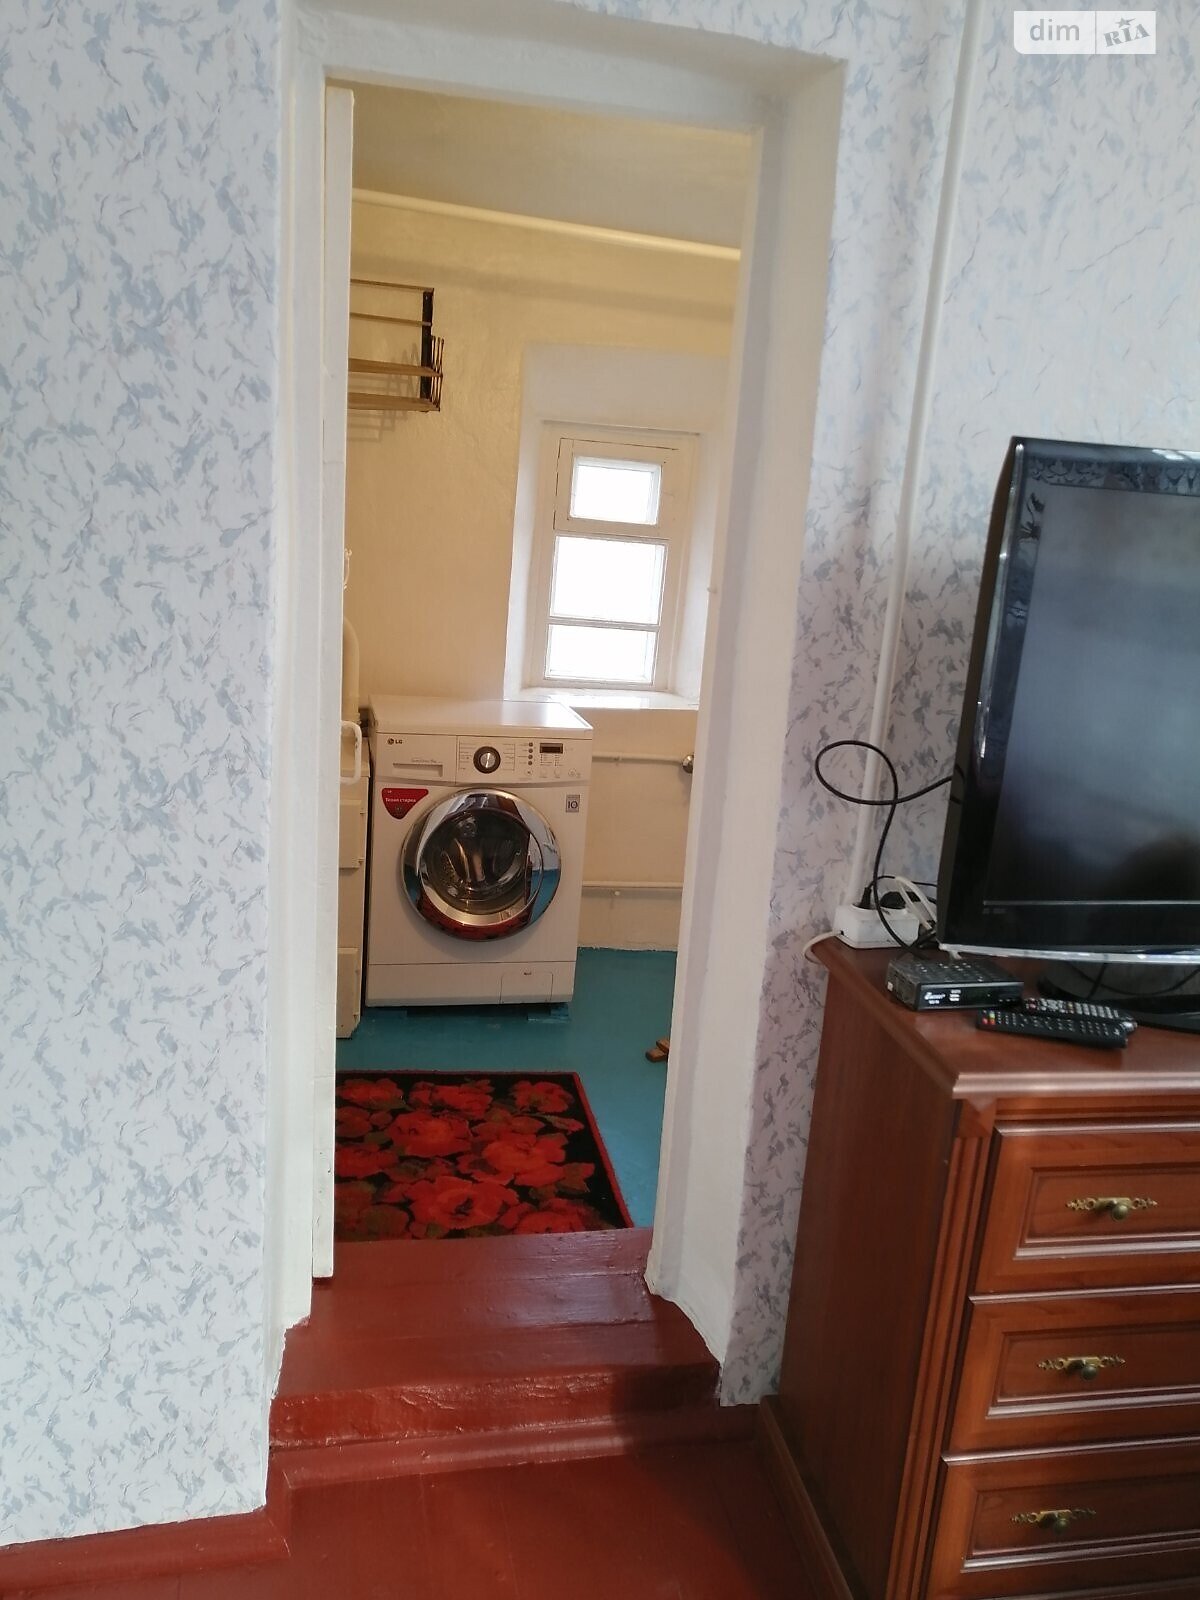 Продажа части дома в Одессе, улица Люстдорфская дорога, 2 комнаты фото 1